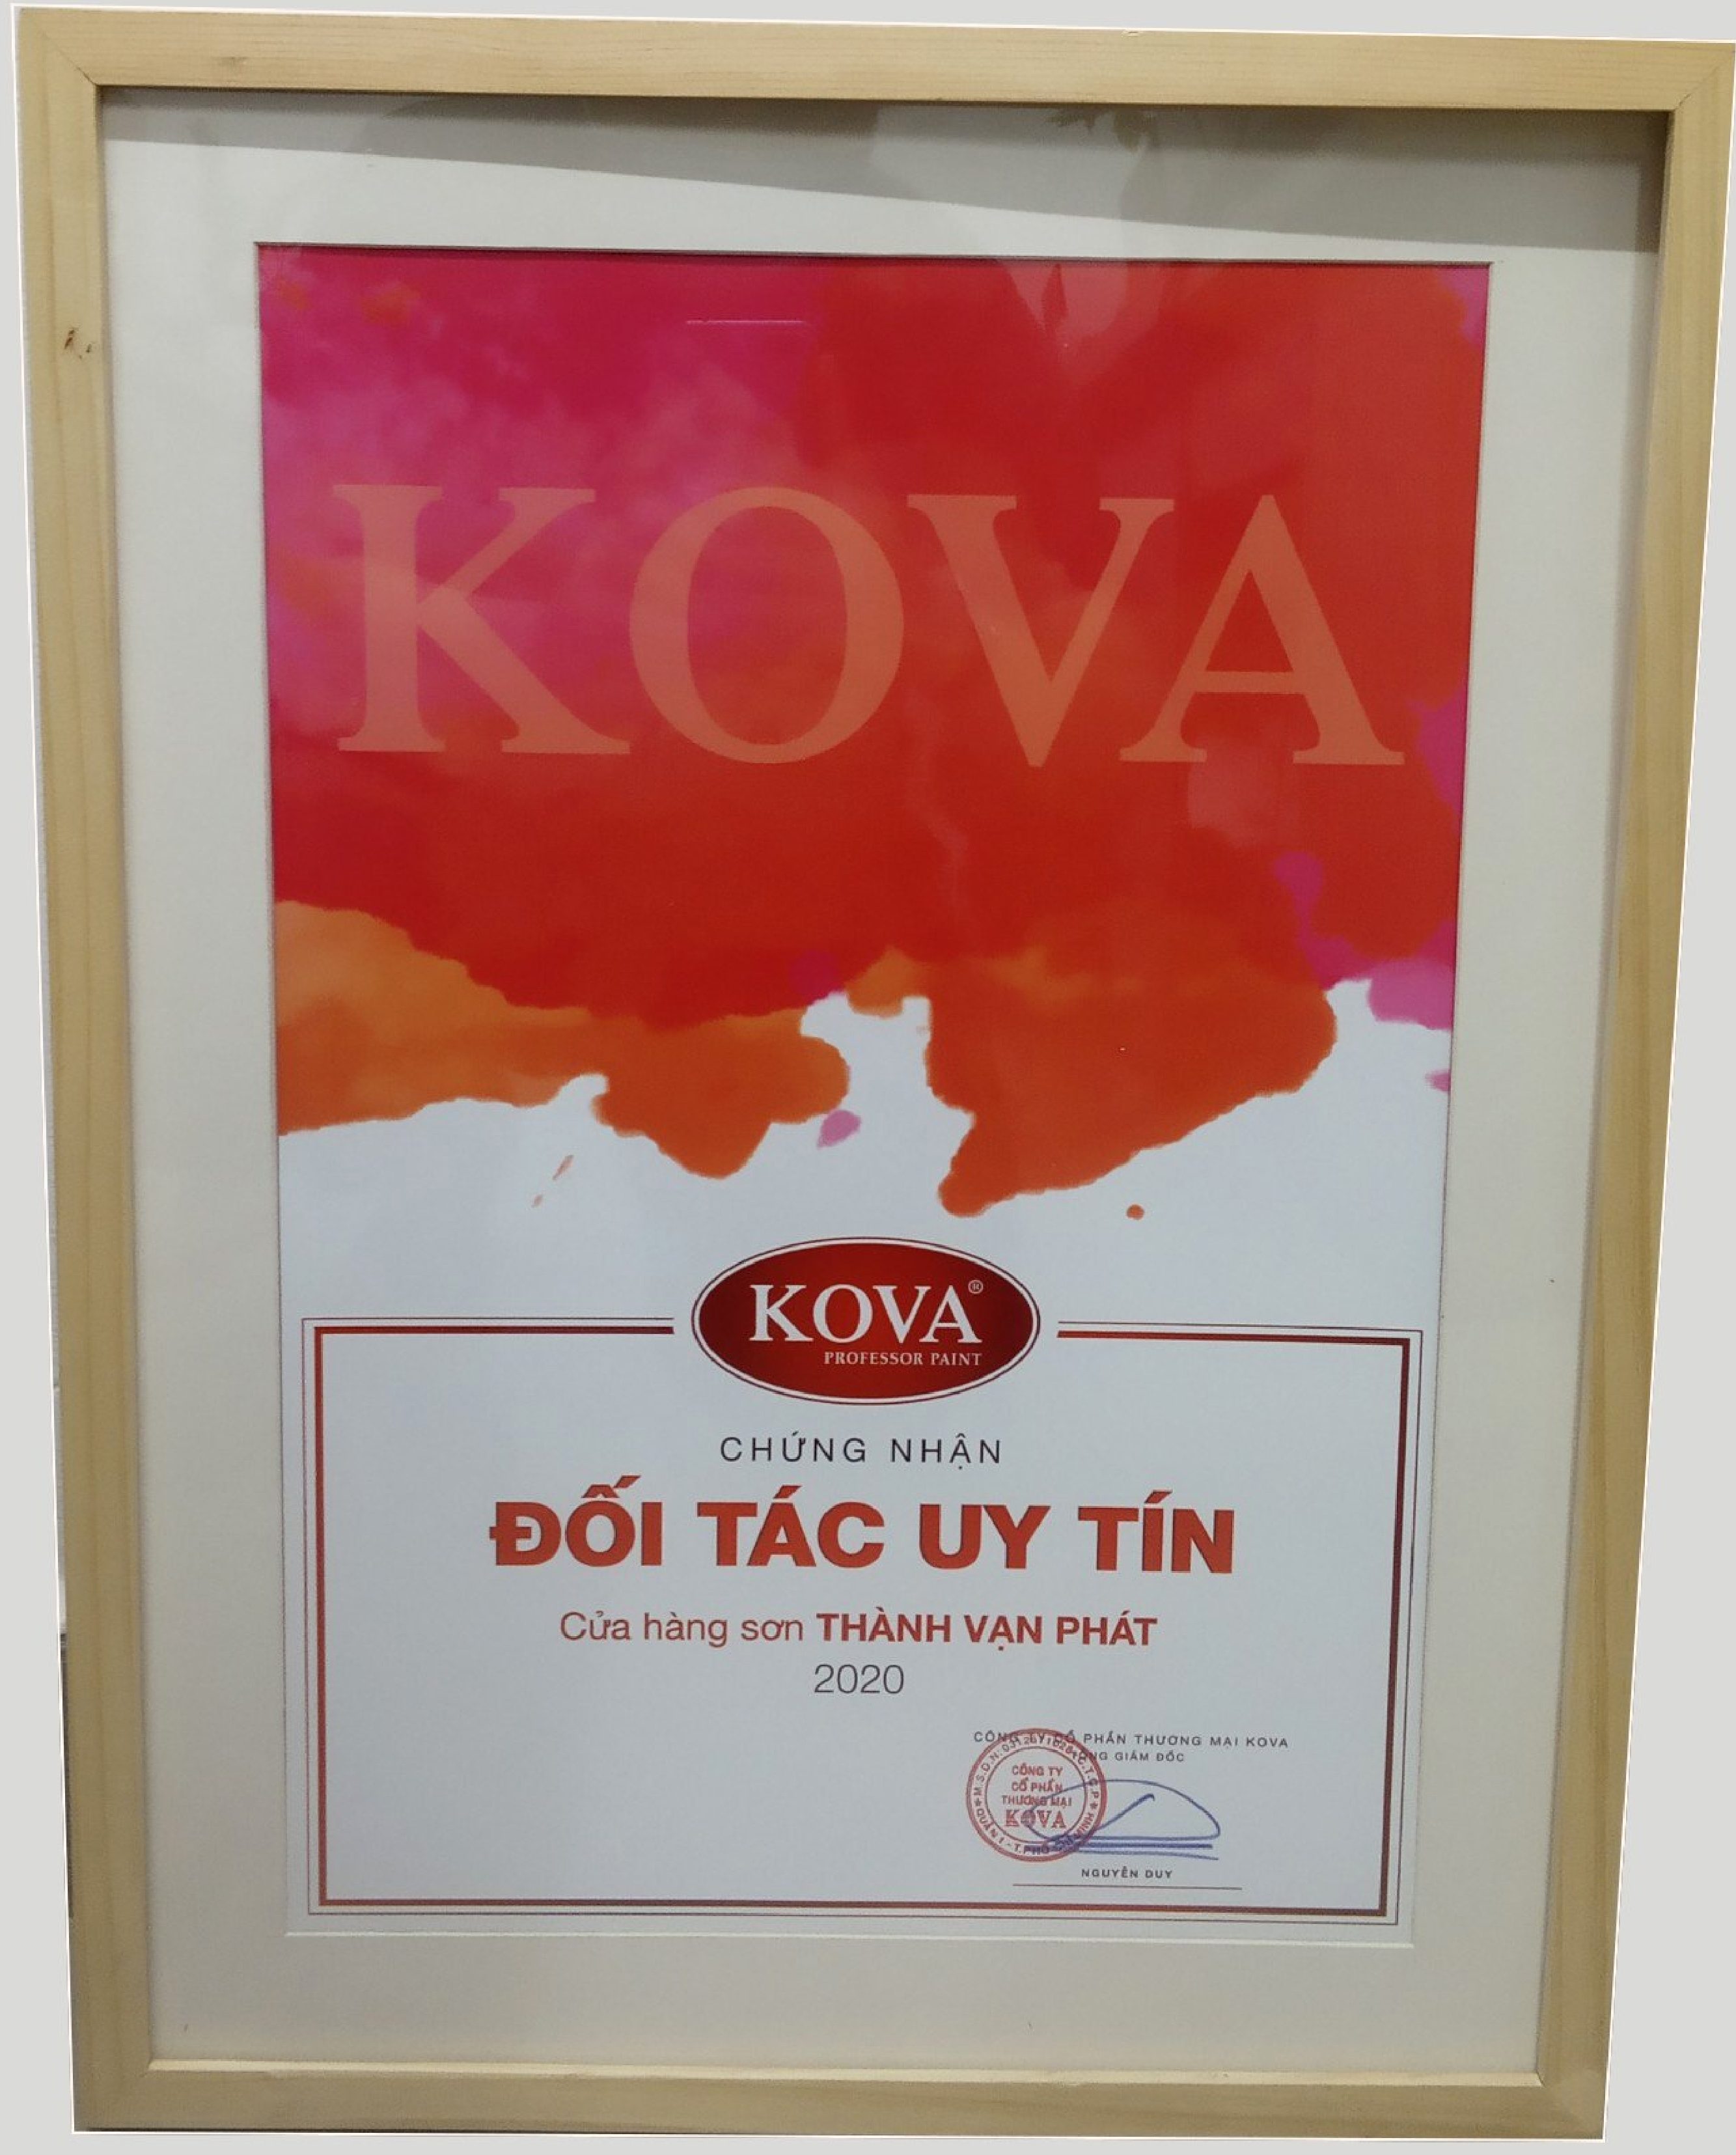 Đại lý sơn Kova: Đại lý sơn Kova chuyên cung cấp cho khách hàng những sản phẩm chất lượng và đẳng cấp, giúp cho tòa nhà của bạn trở nên lung linh hơn bao giờ hết. Hãy đến với chúng tôi để cập nhật các xu hướng mới nhất.